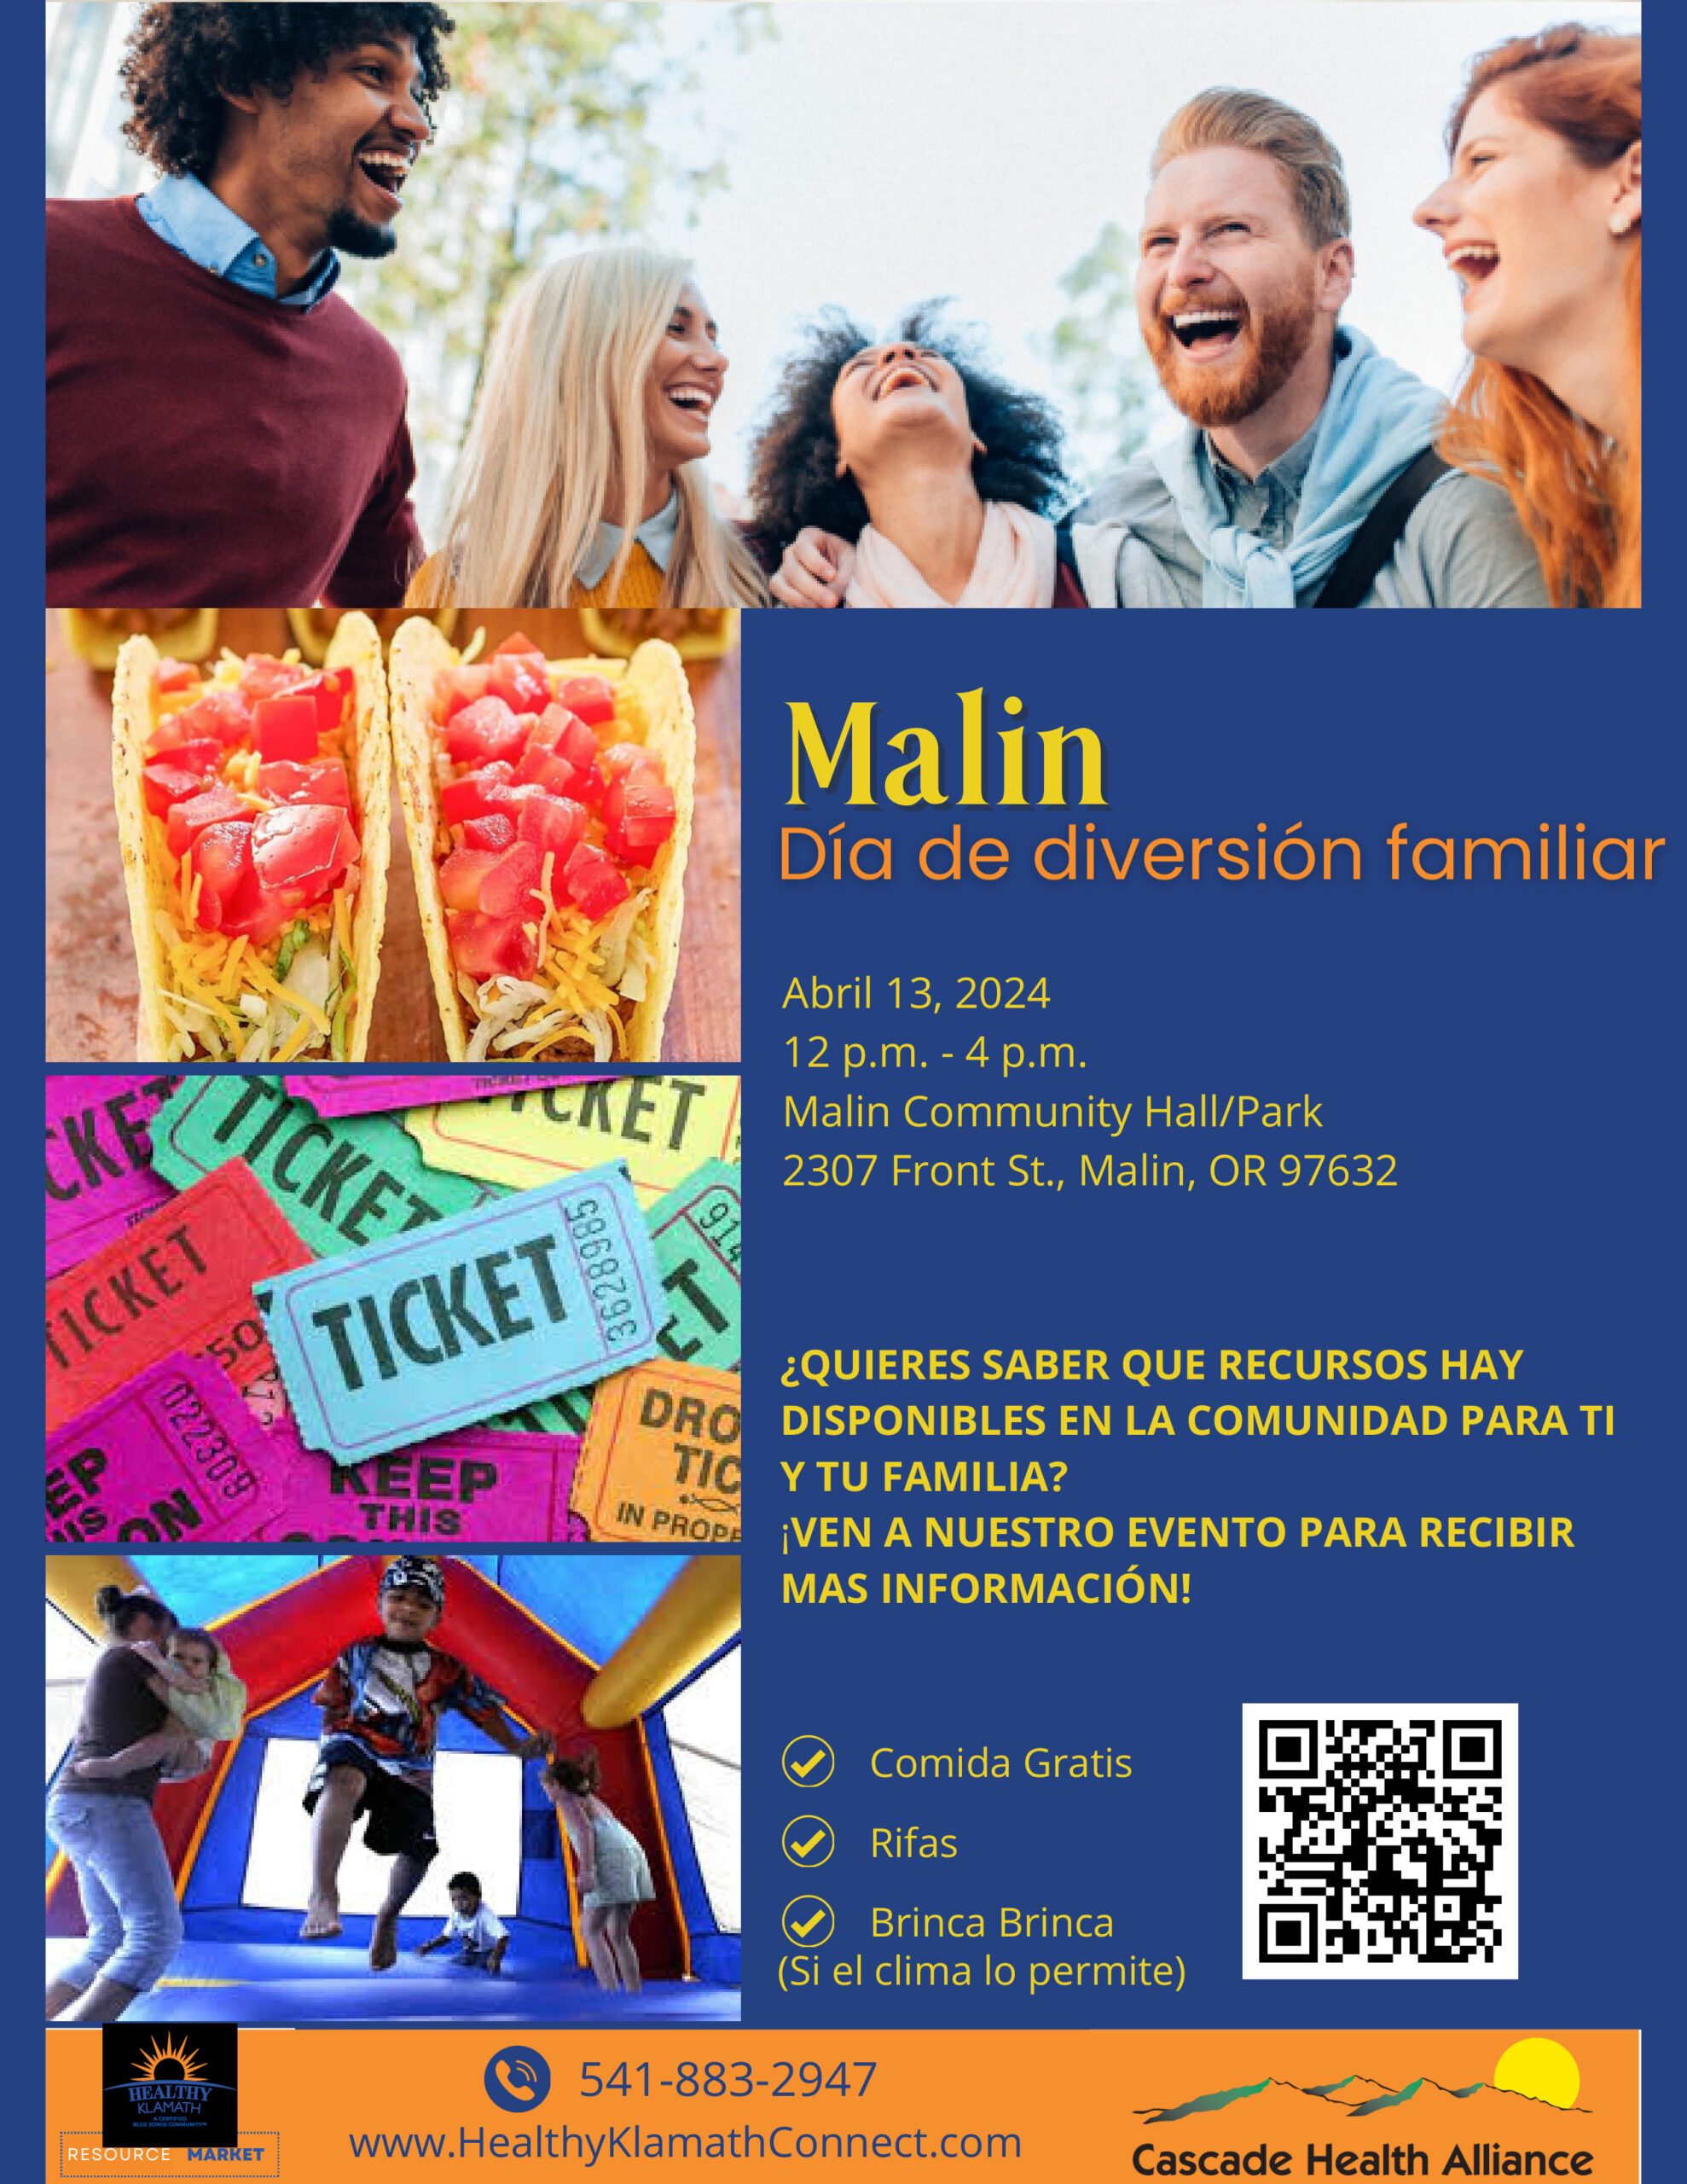 ¡Día de diversión familiar en Malin, 13 de abril!